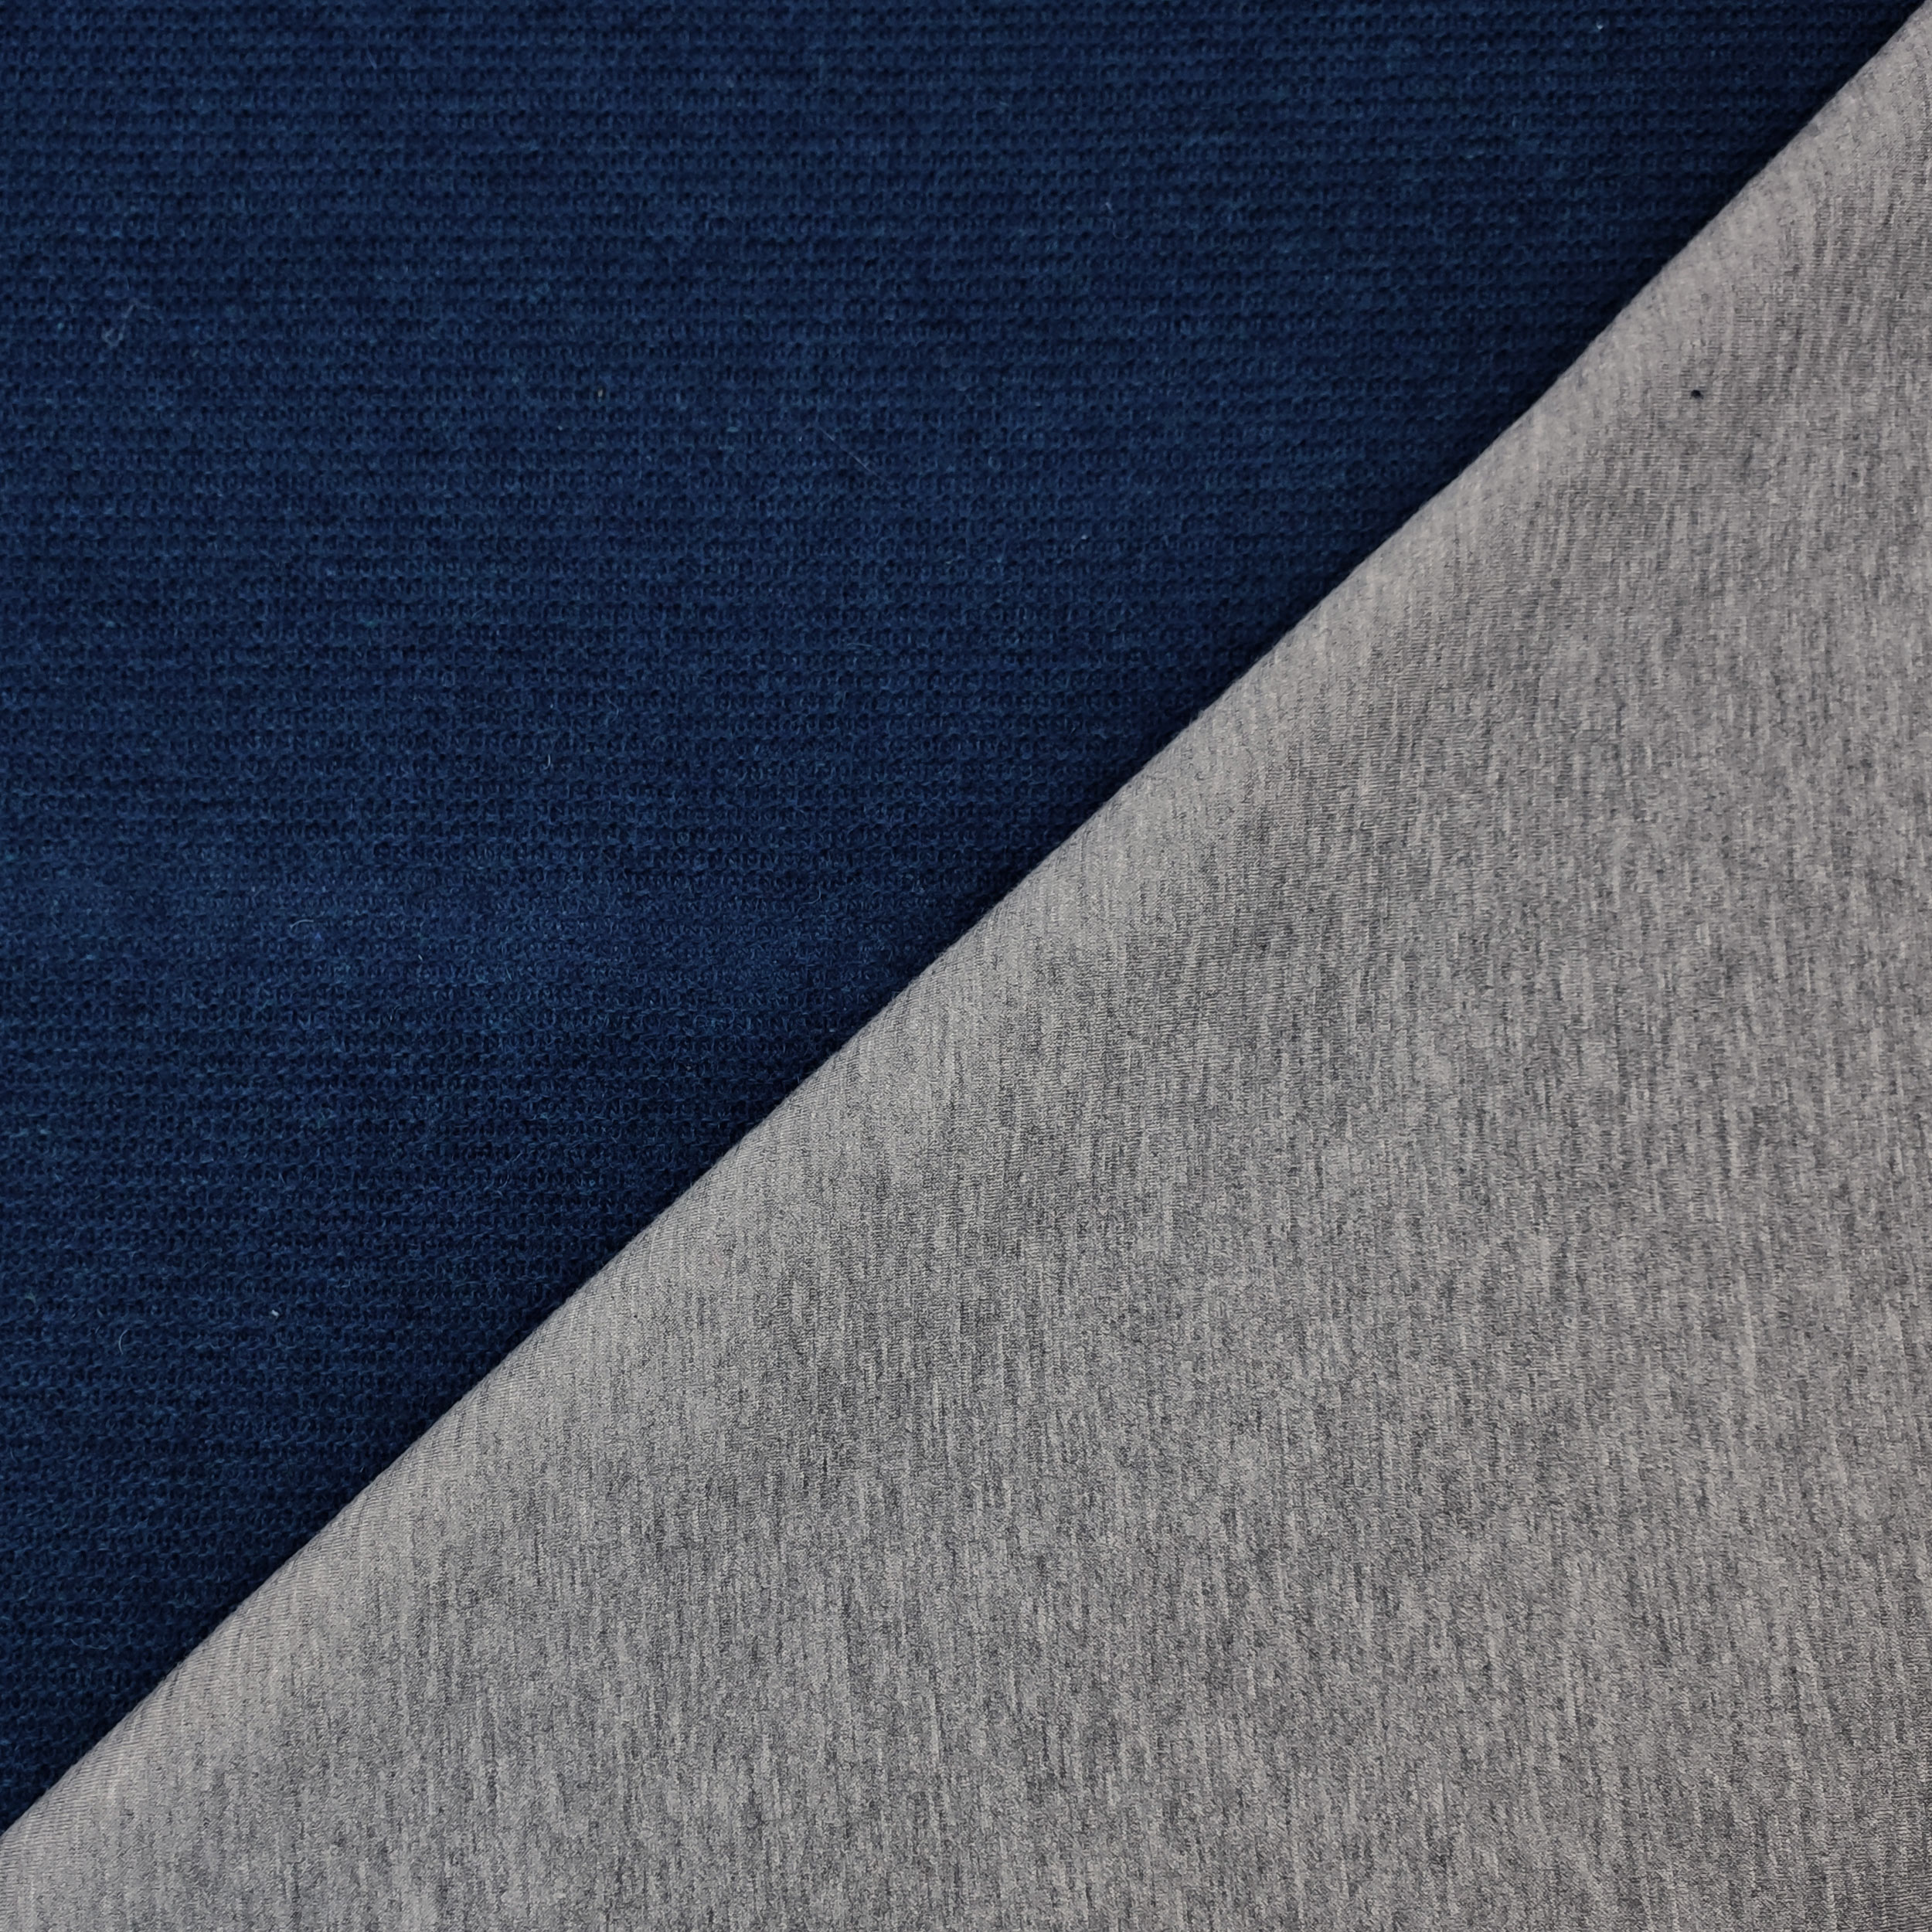 tessuto-neoprene-punto-maglia-blu-e-grigio